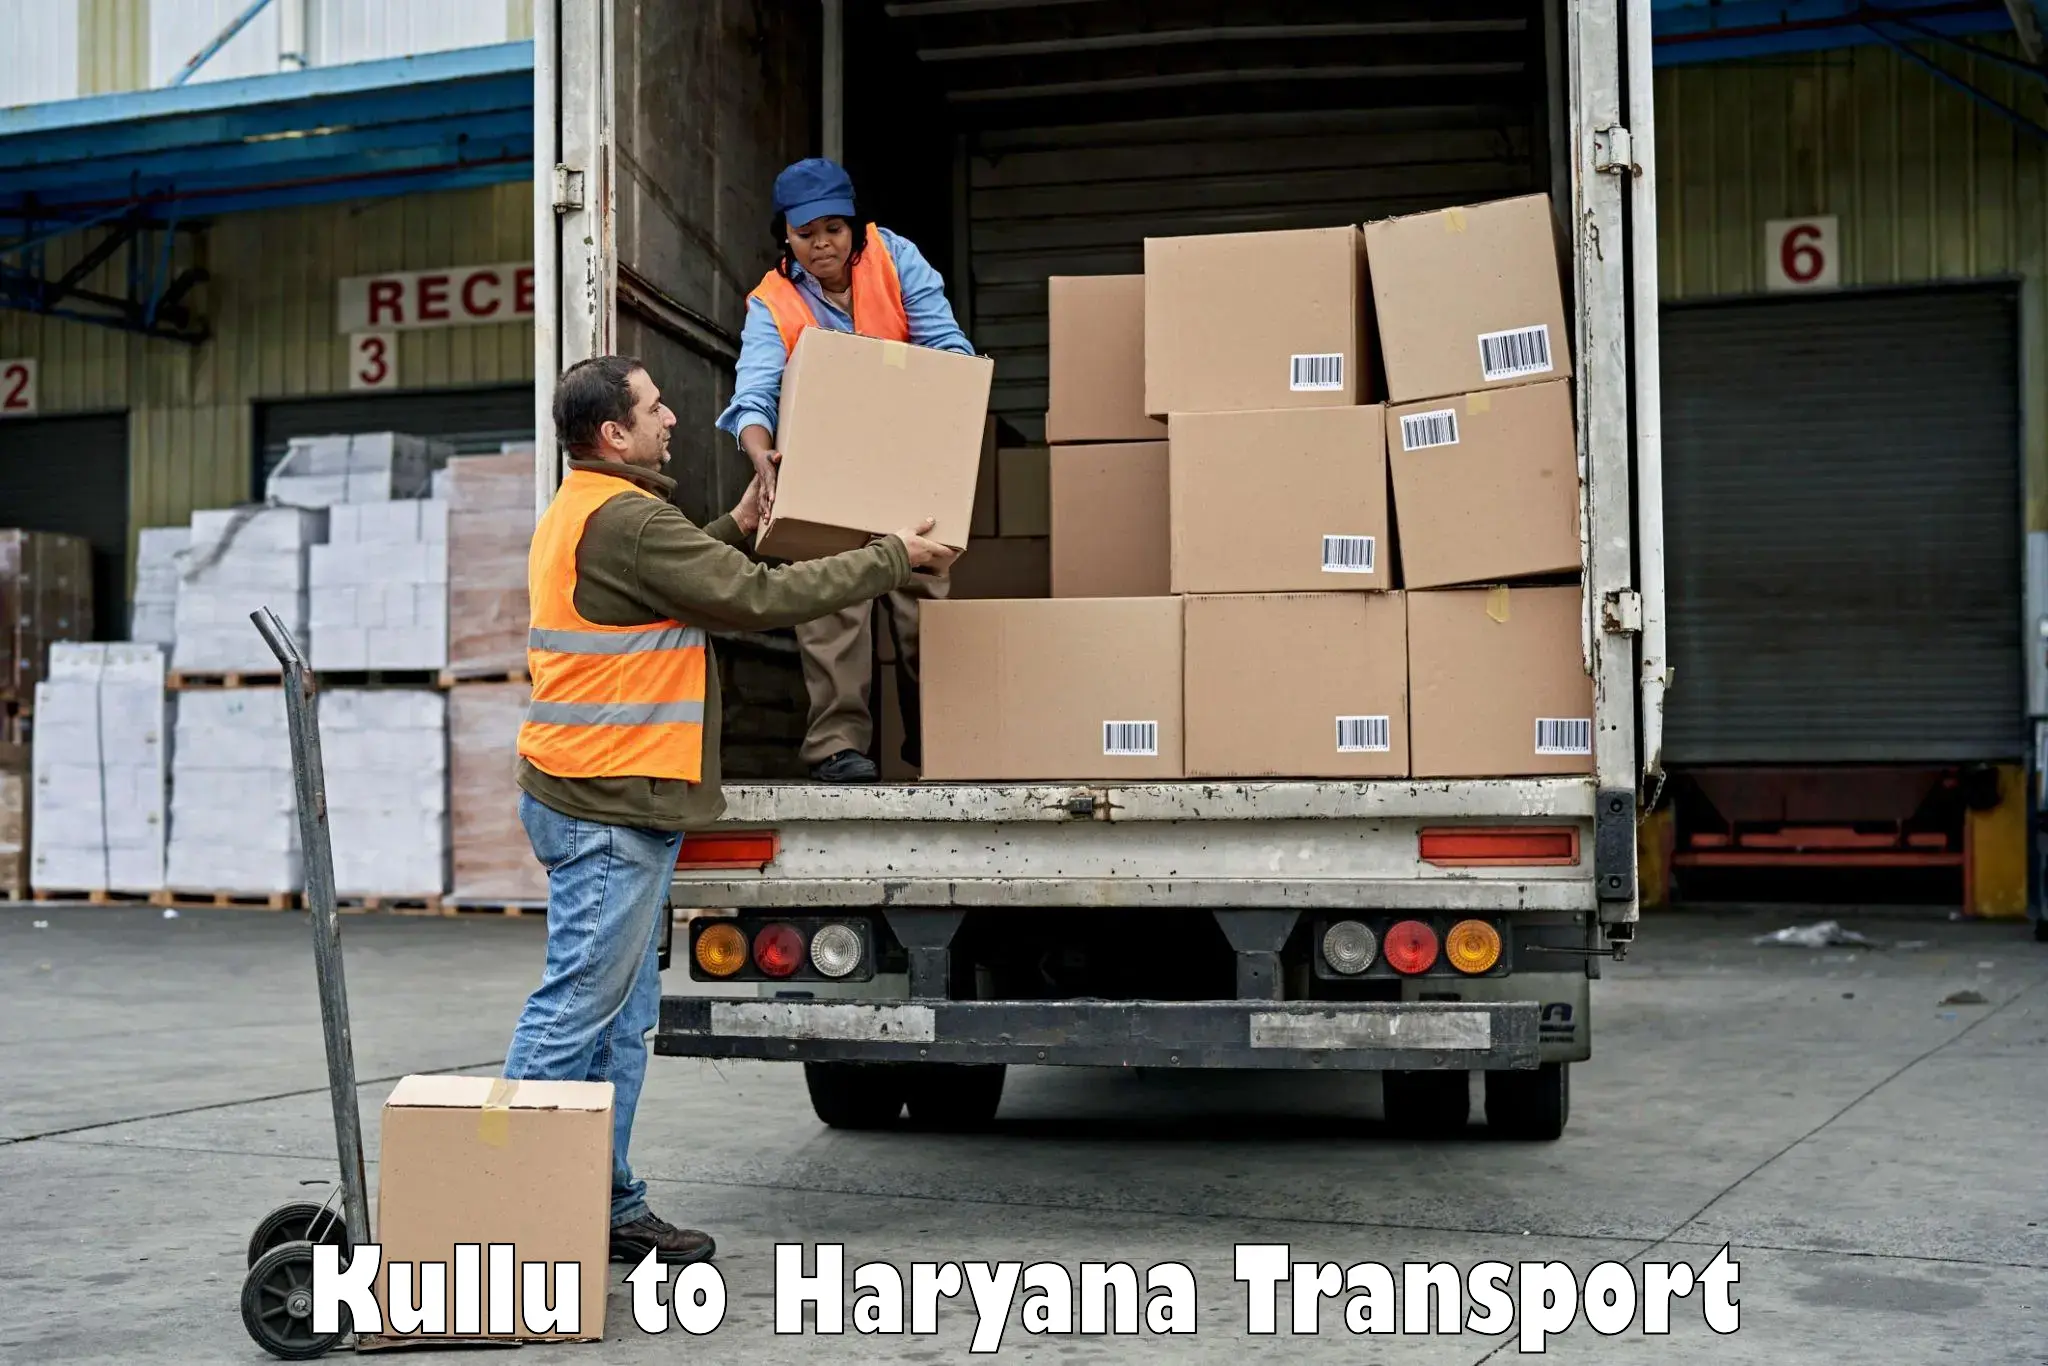 Air freight transport services Kullu to Hansi